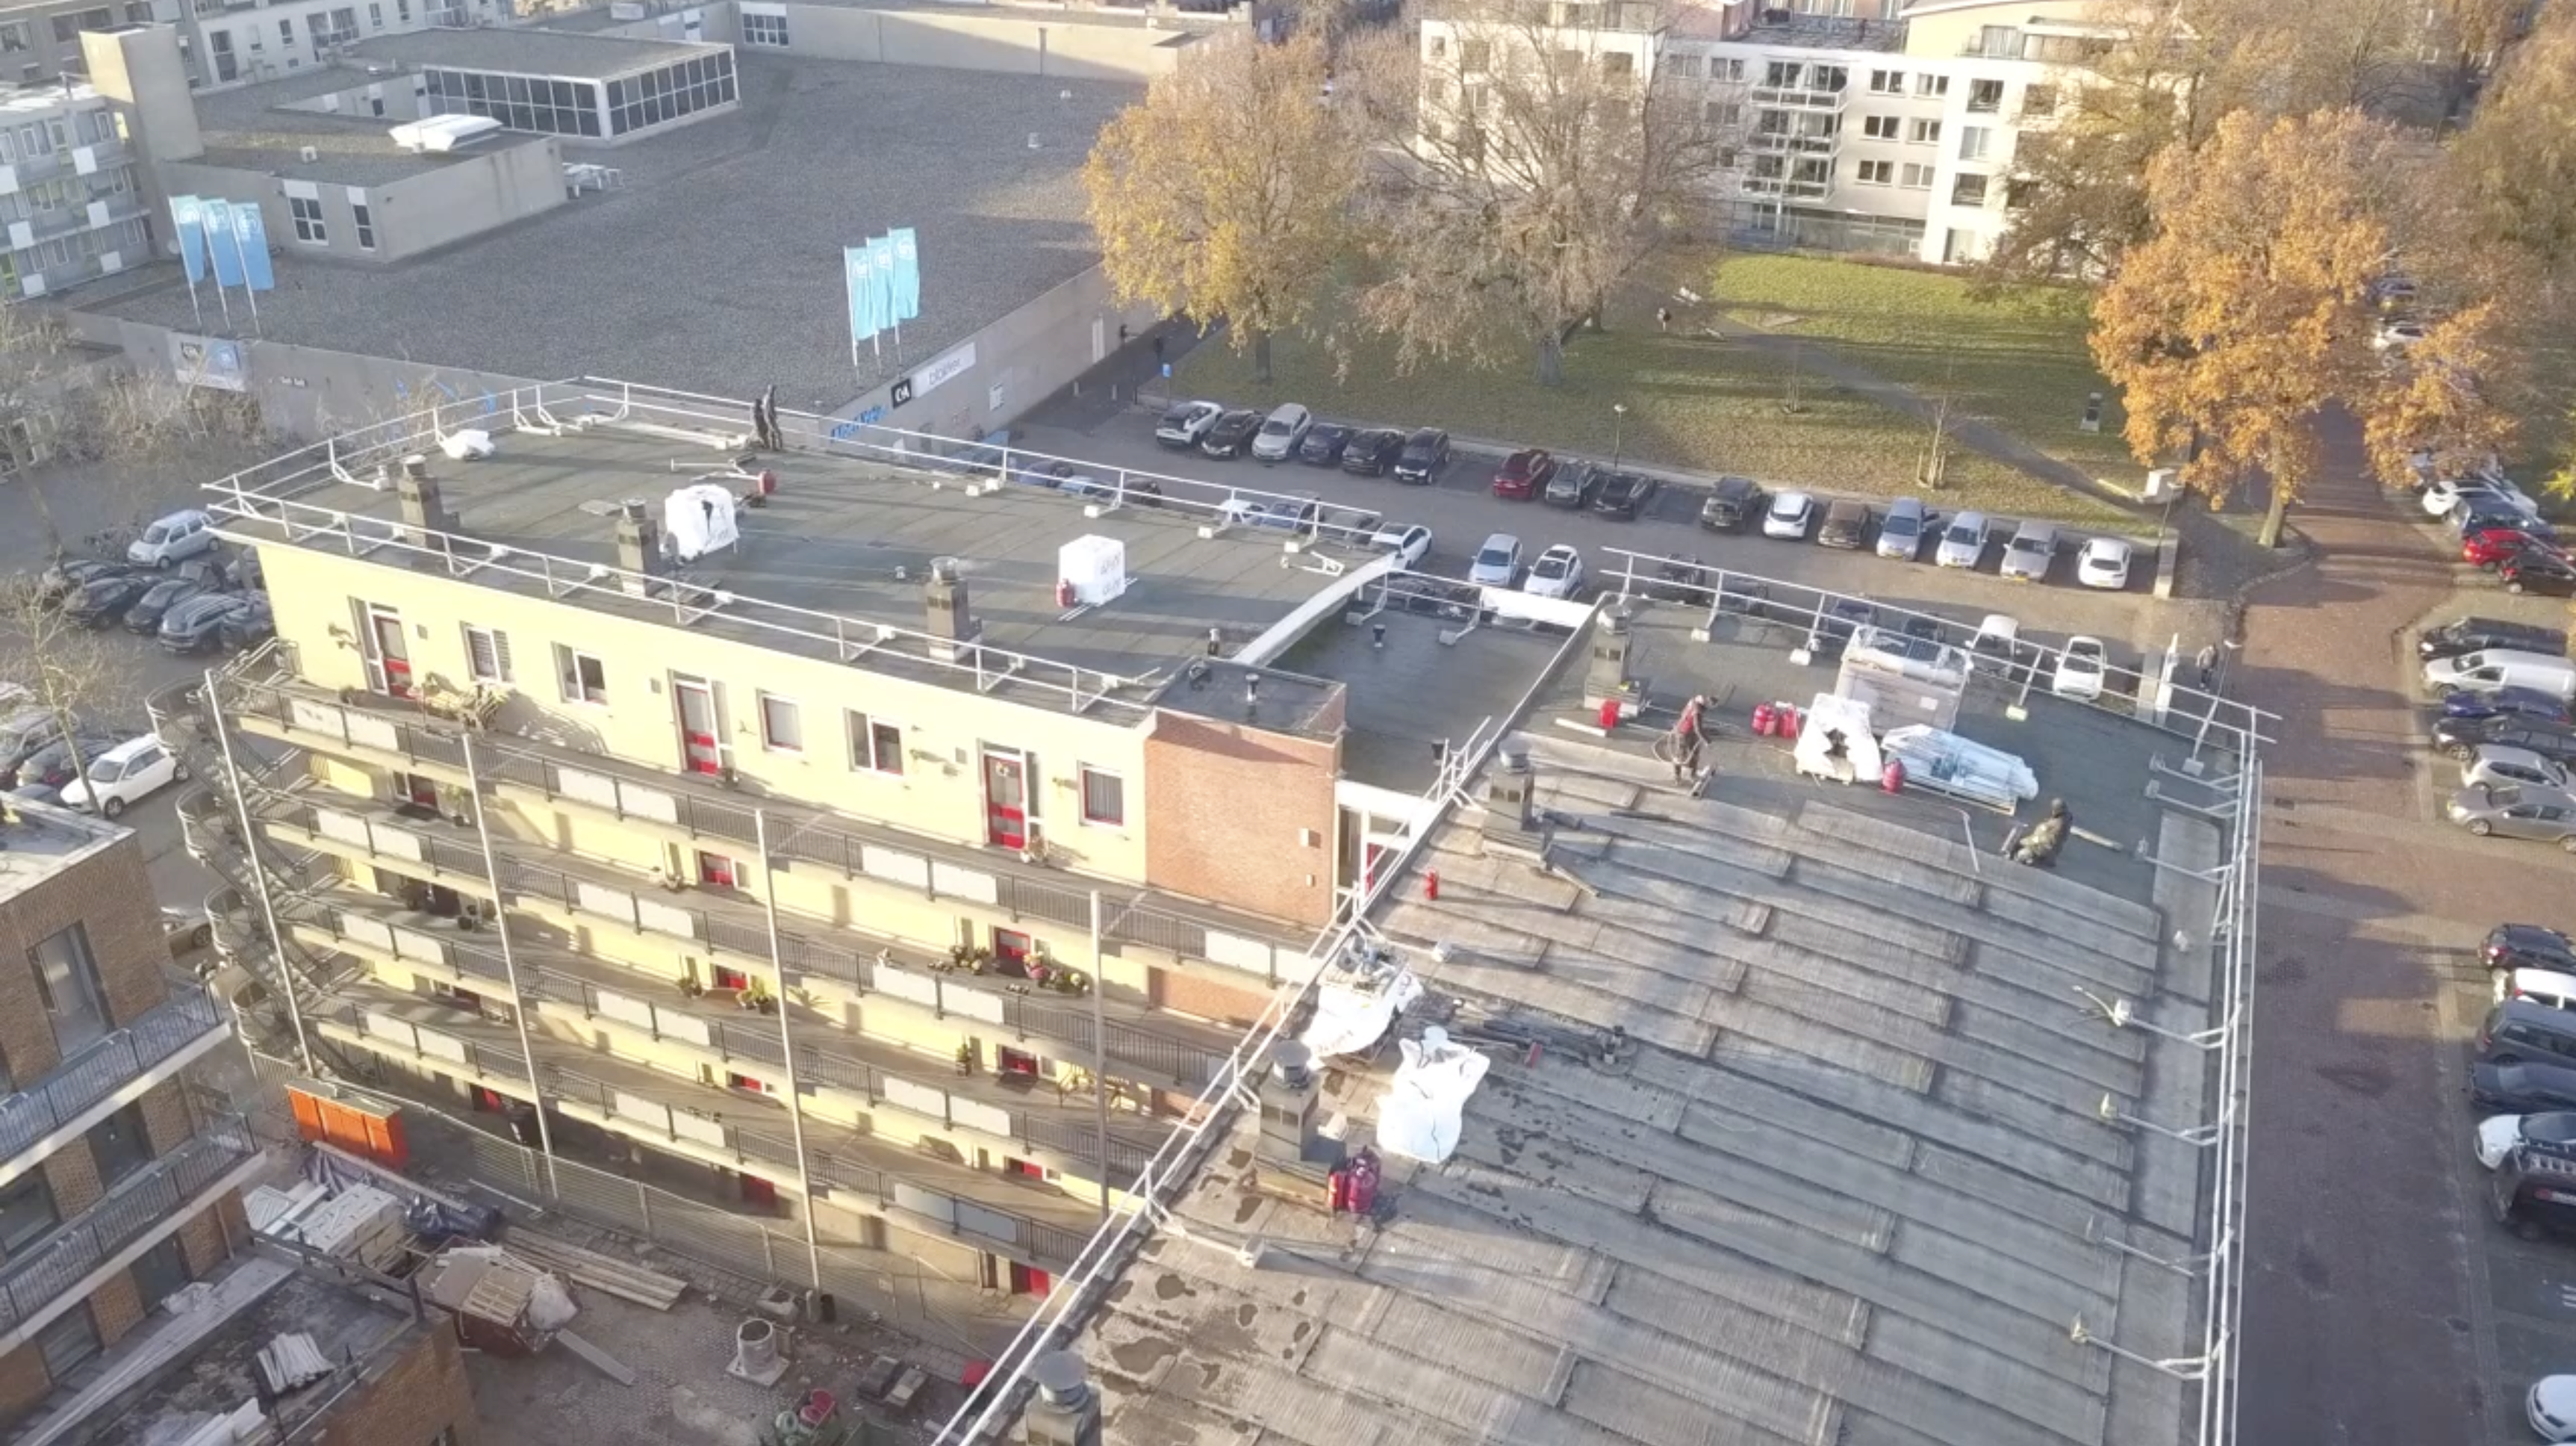 Dakwerkzaamheden aan het Gashouderplein vanuit de lucht gefotografeerd.